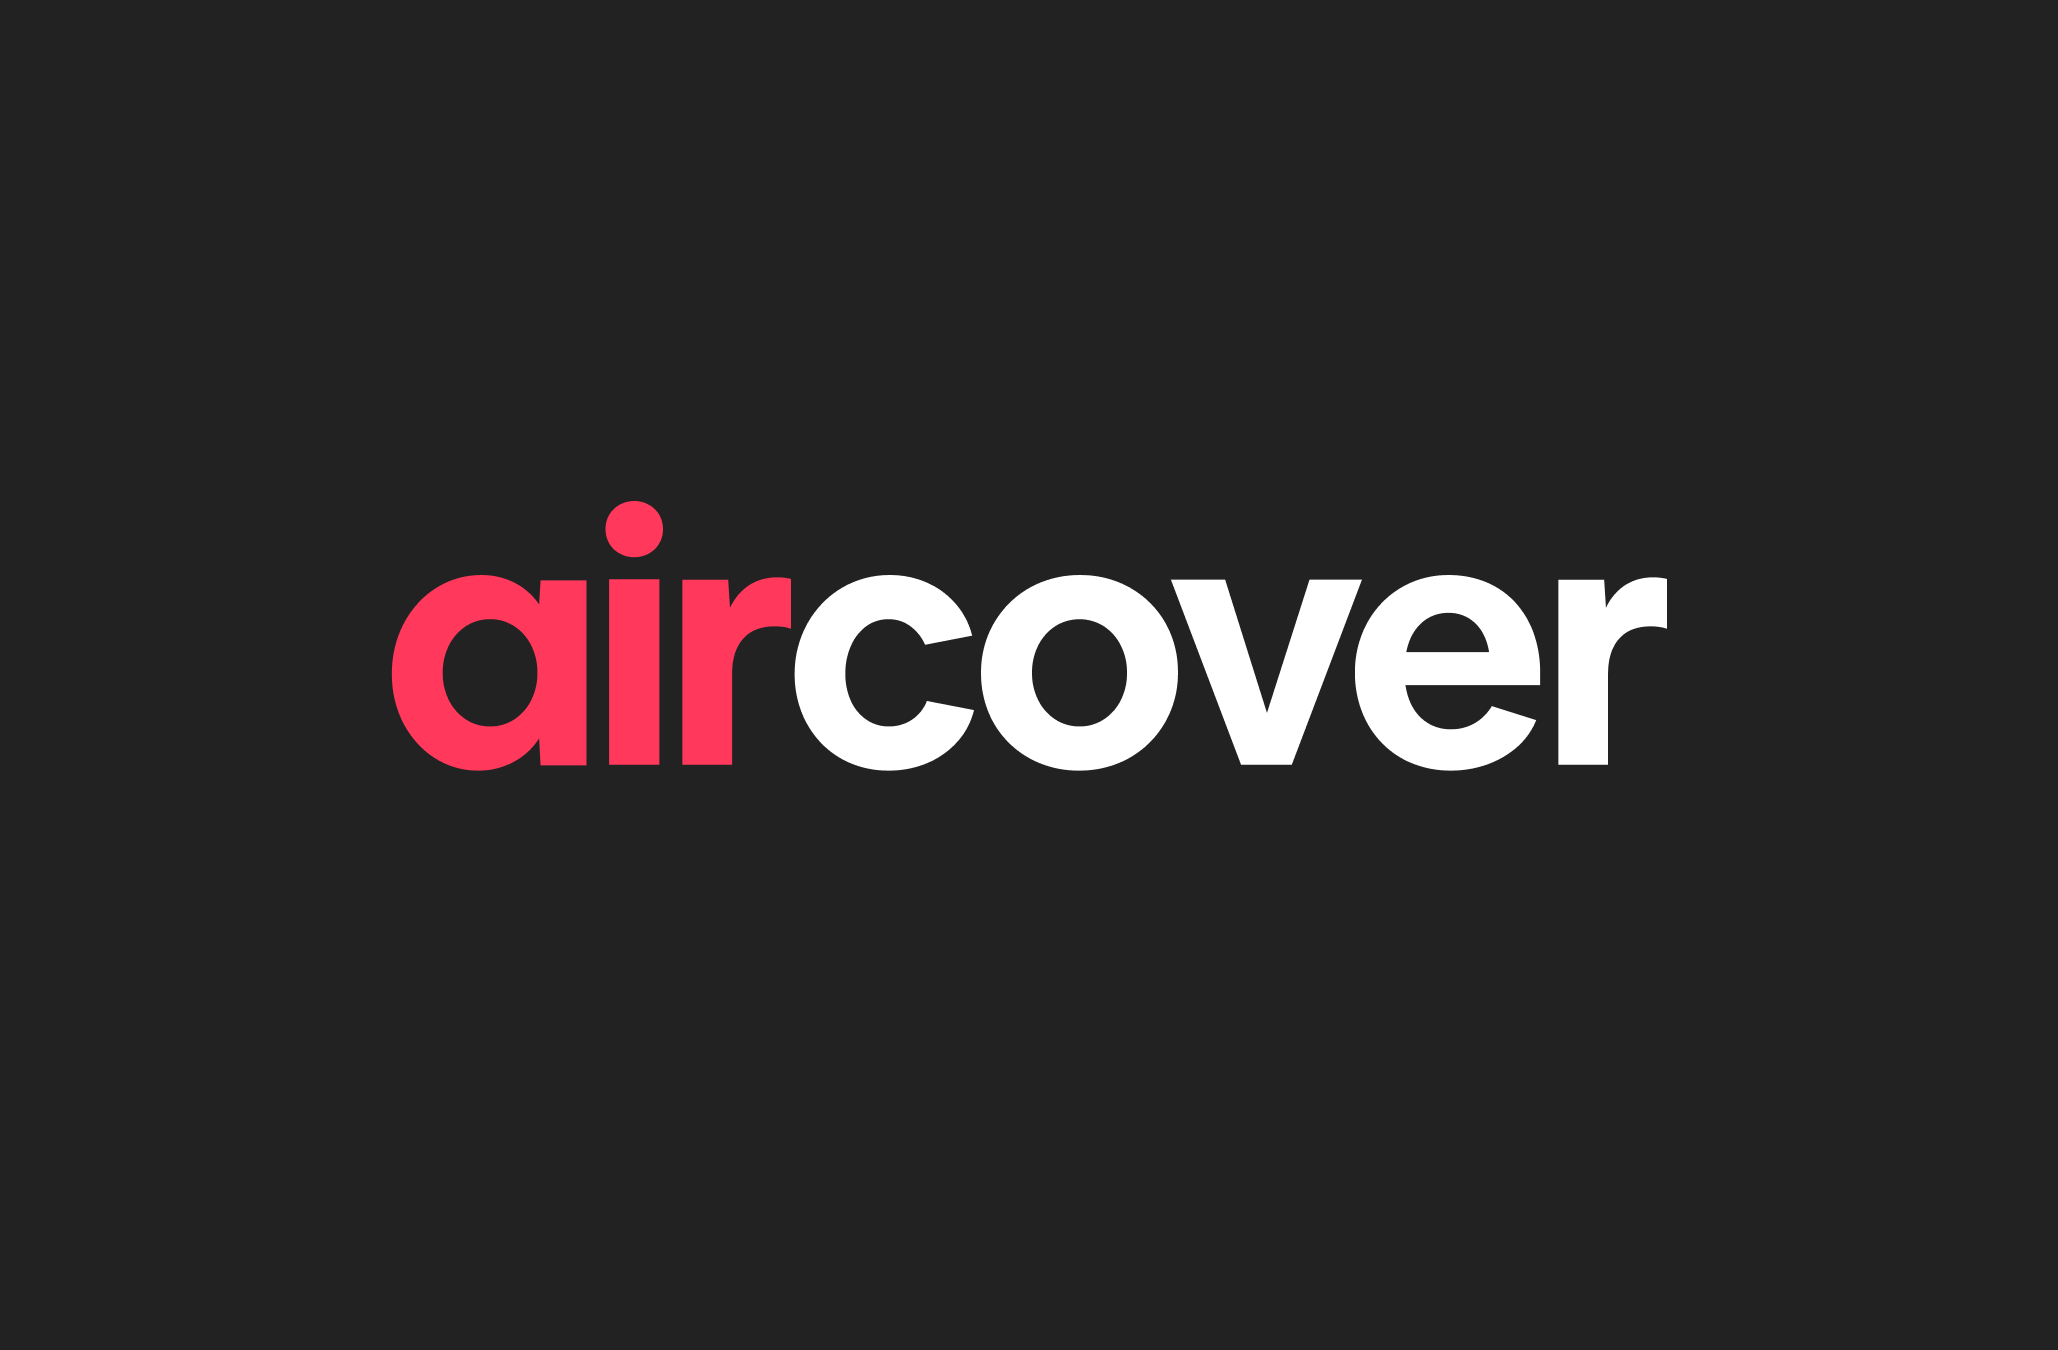 Logo AirCover z czerwonymi i białymi literami na czarnym tle.